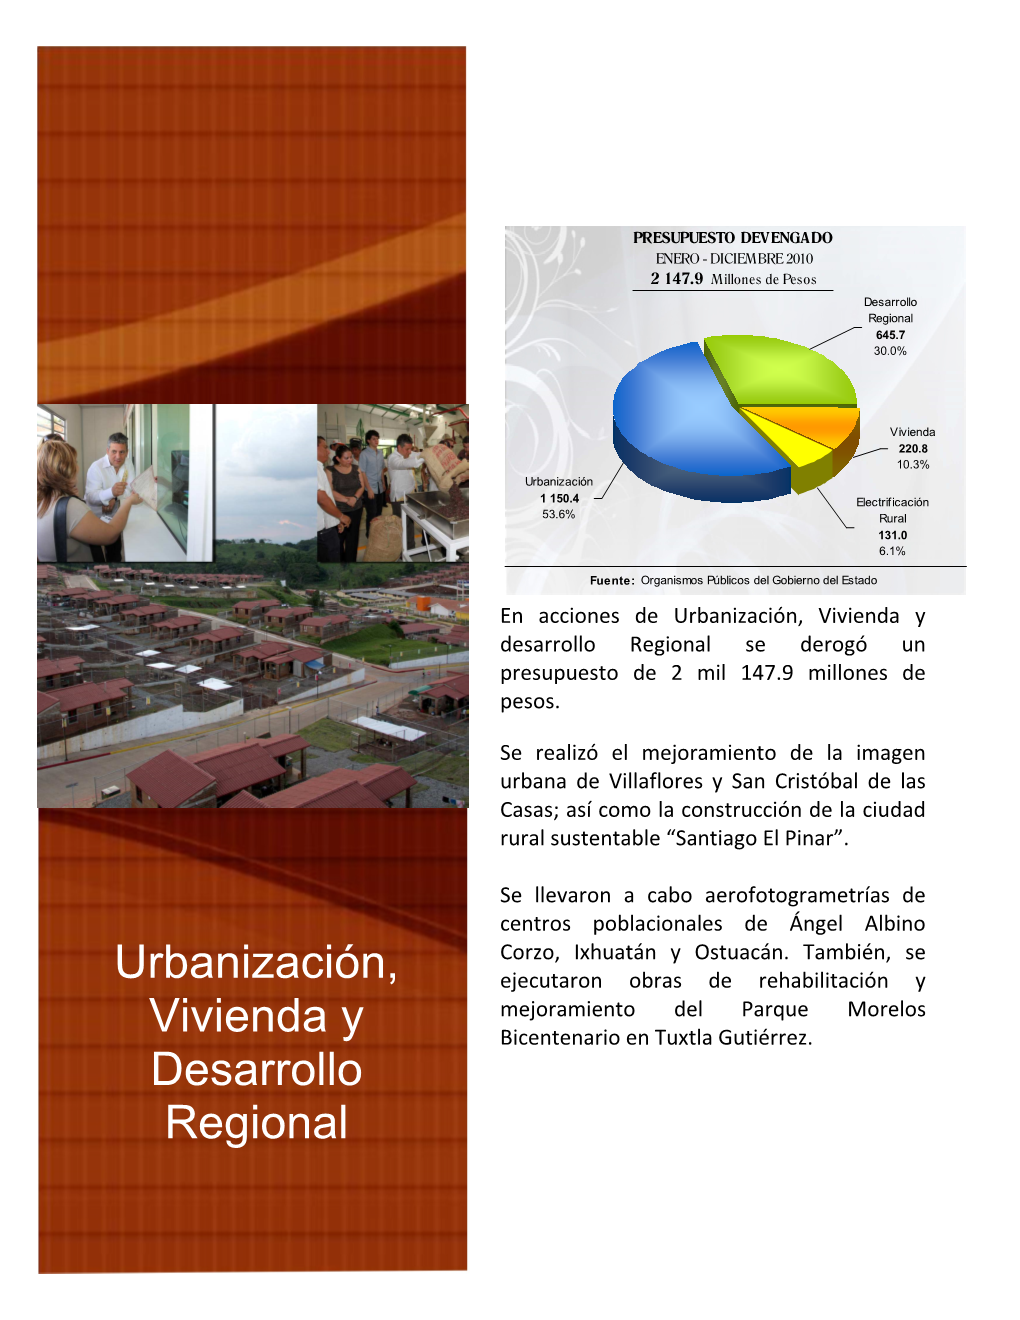 Urbanización, Vivienda Y Desarrollo Regional Se Derogó Un Presupuesto De 2 Mil 147.9 Millones De Pesos